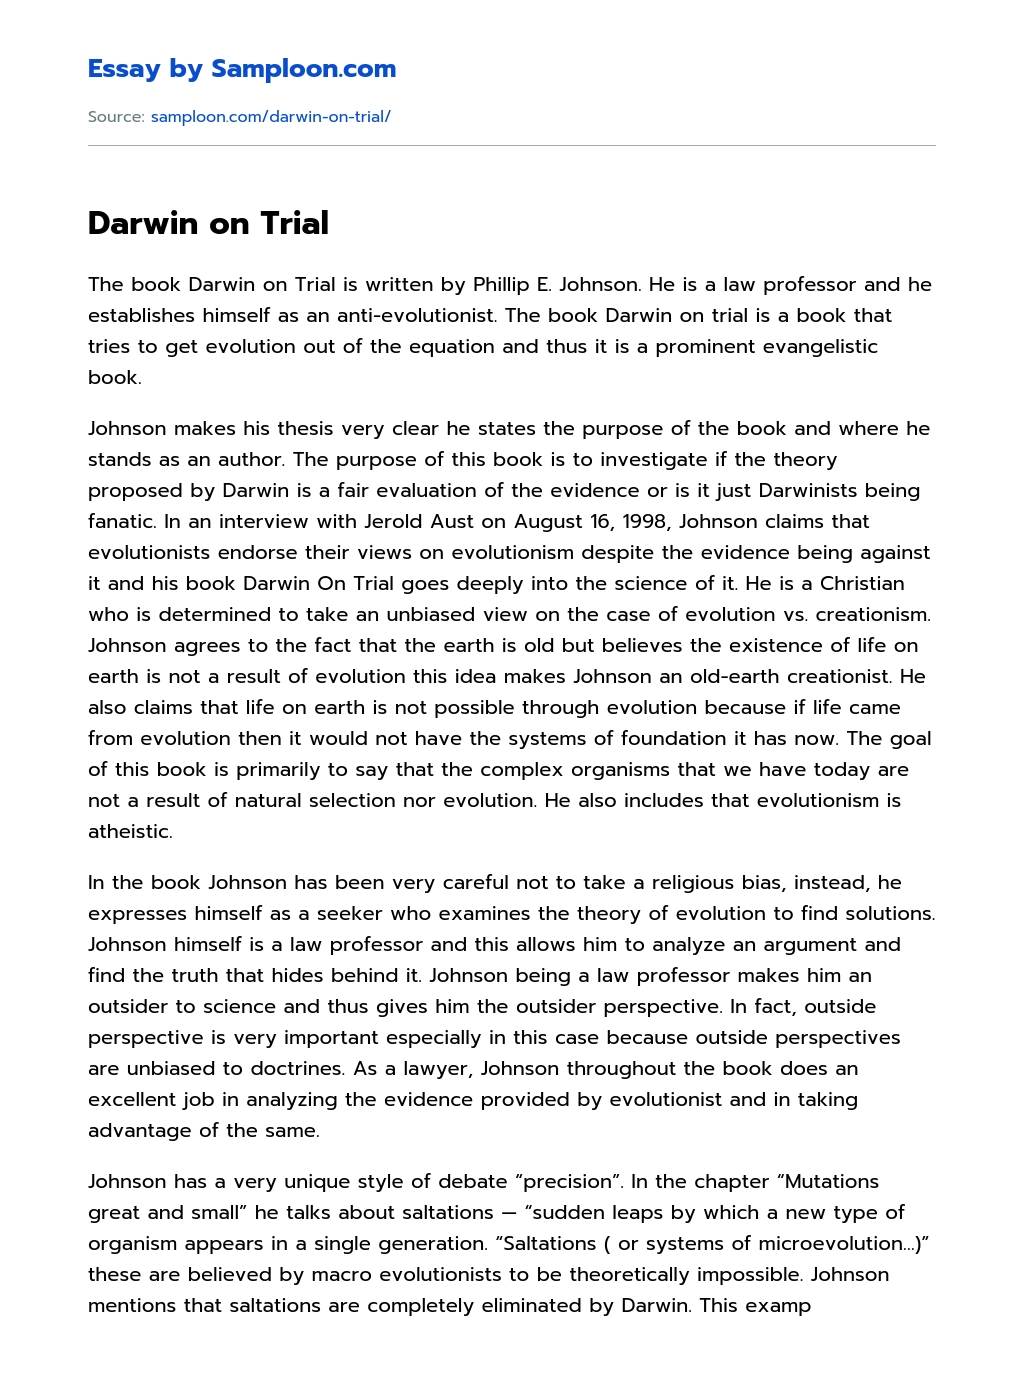 Darwin on Trial essay